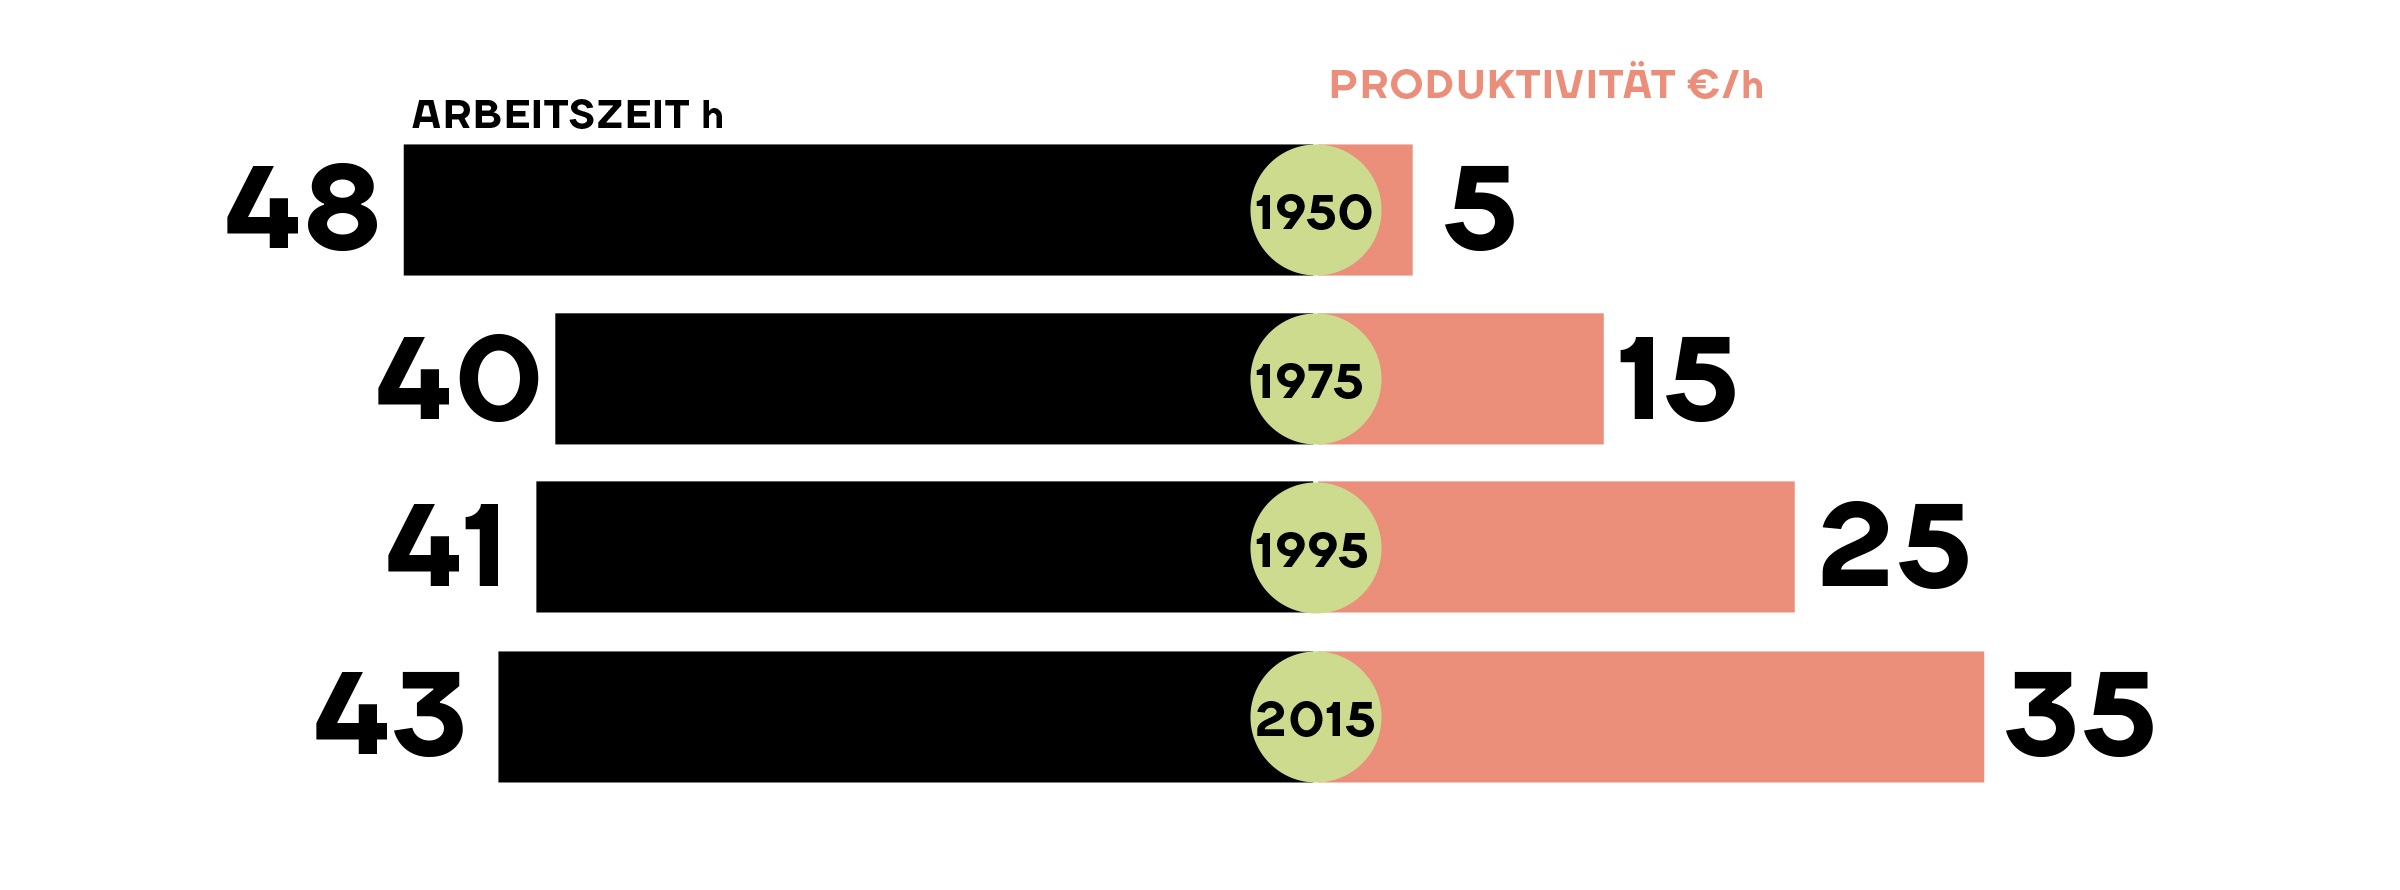 Arbeitszeit vs Produktivität